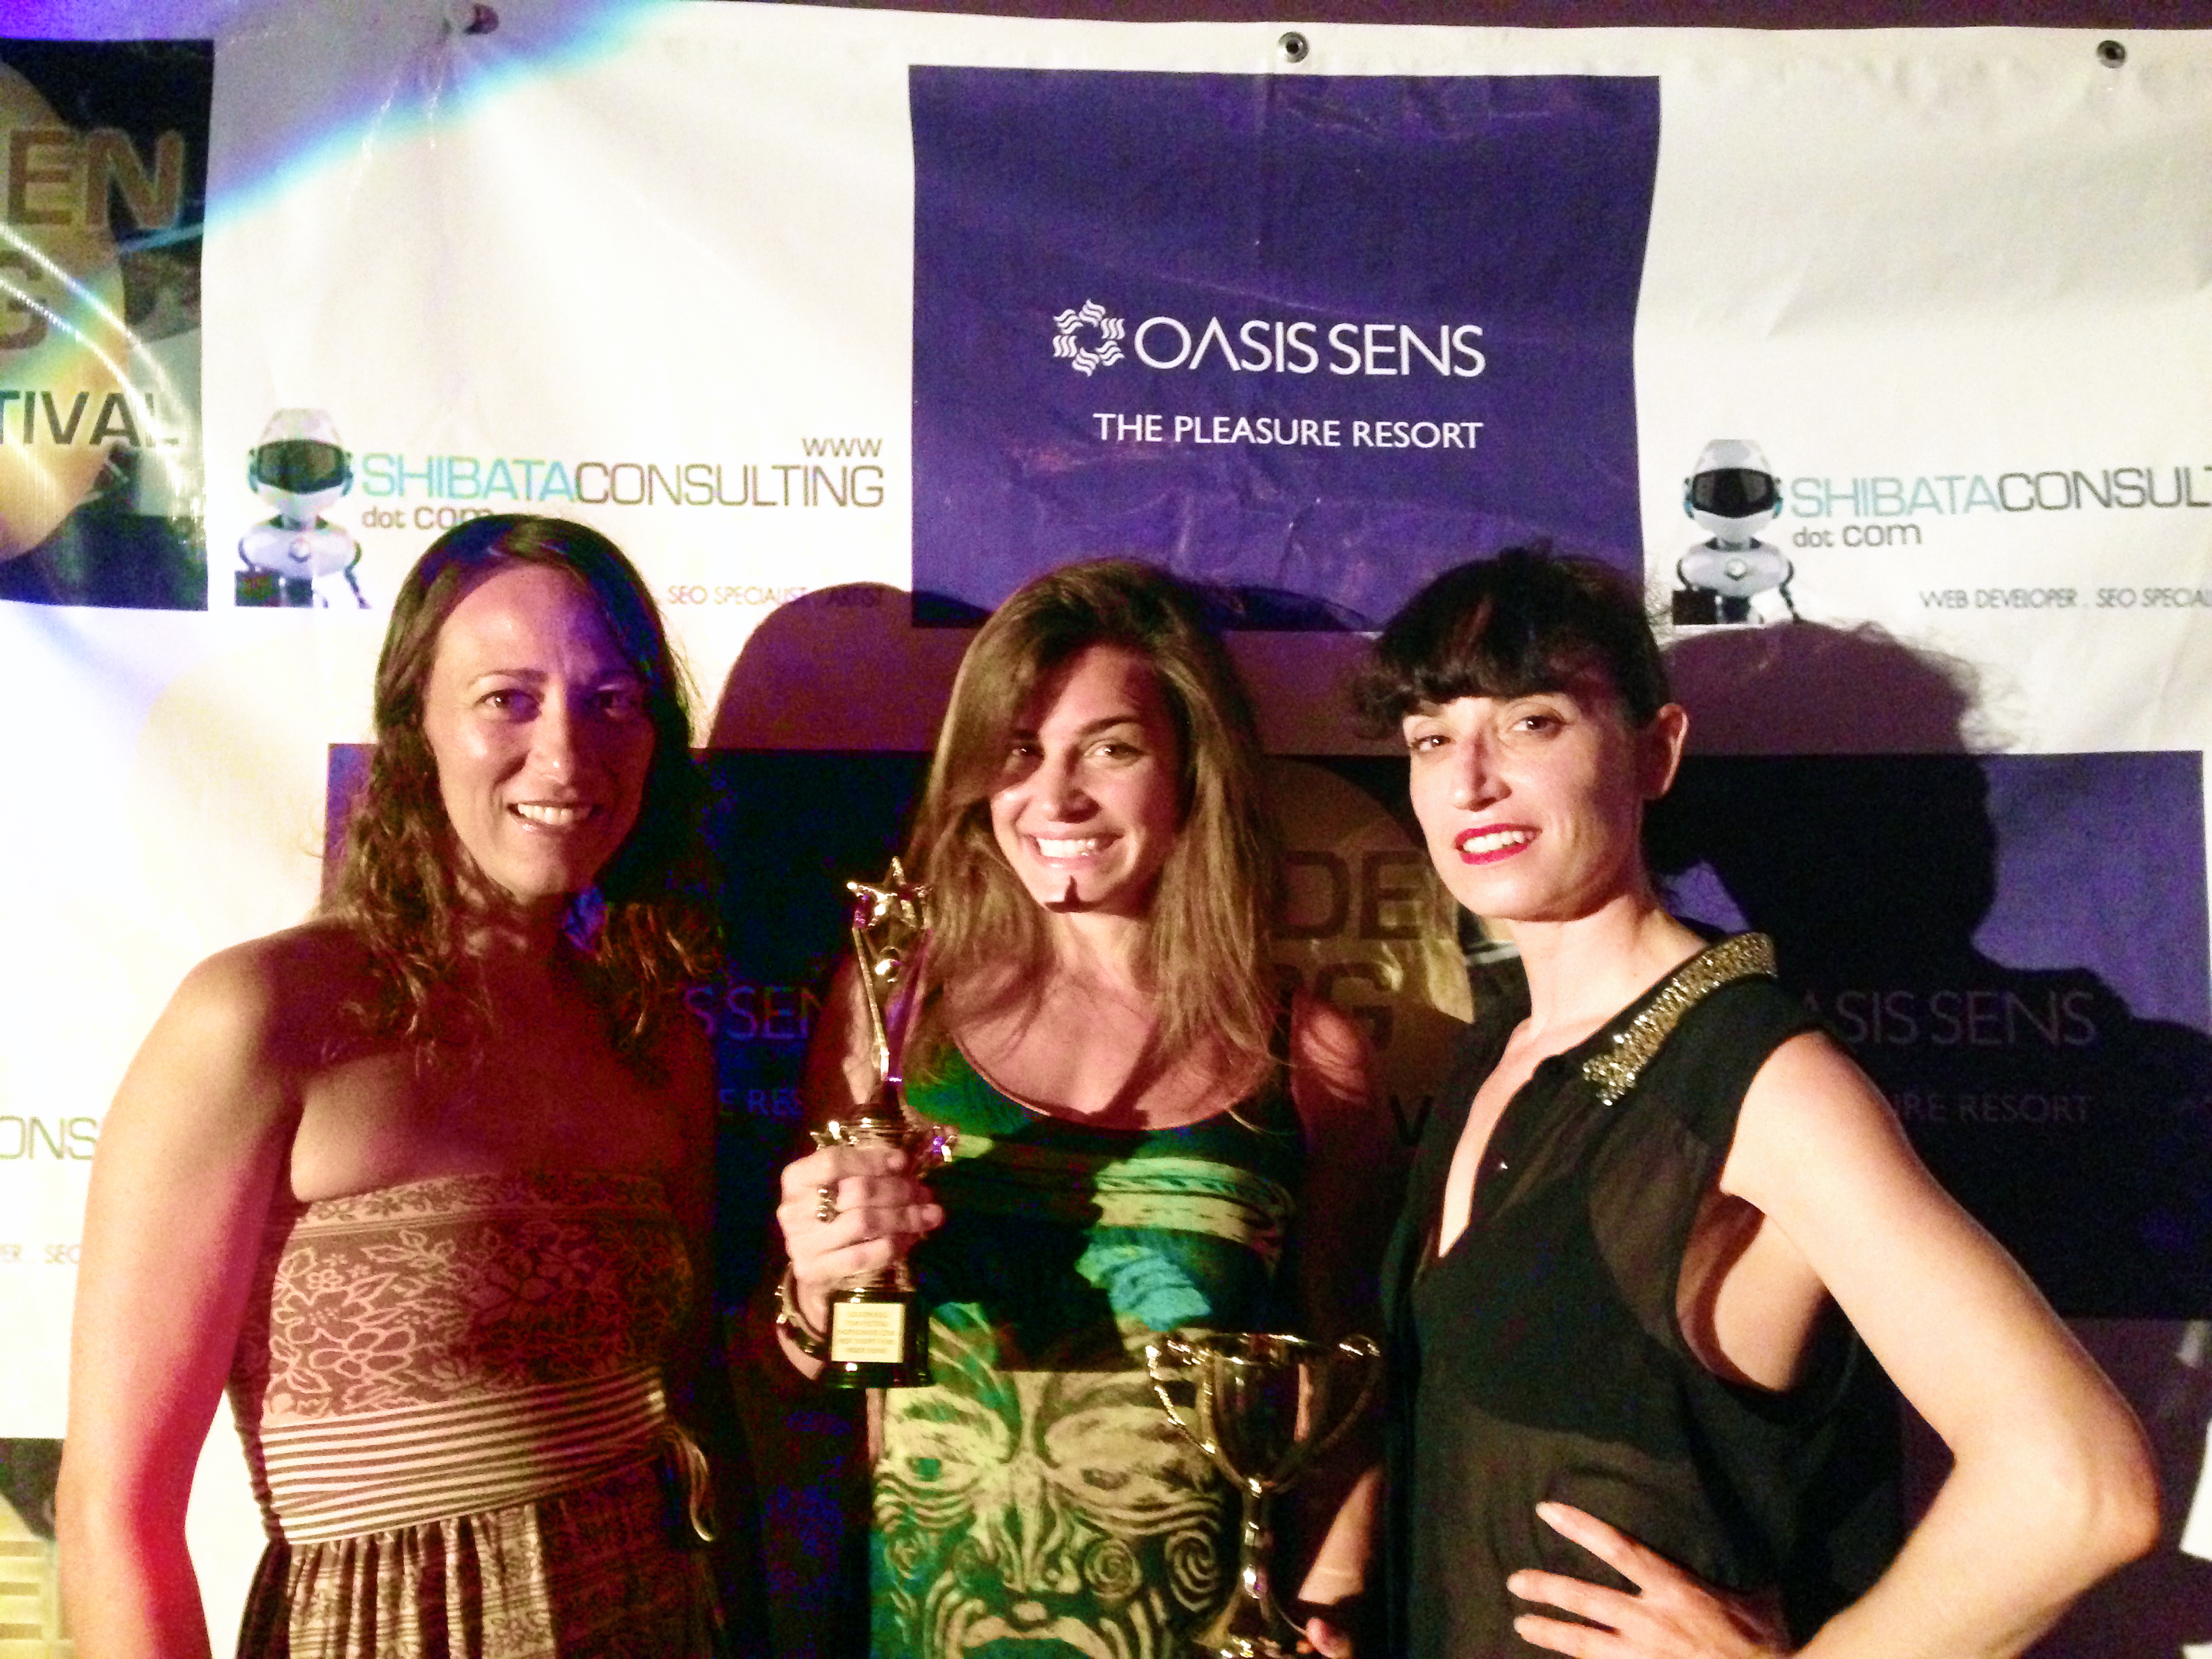 Golden Egg Film Festival Worldwide Awards Ceremony Night 2014 at Oasis Sens